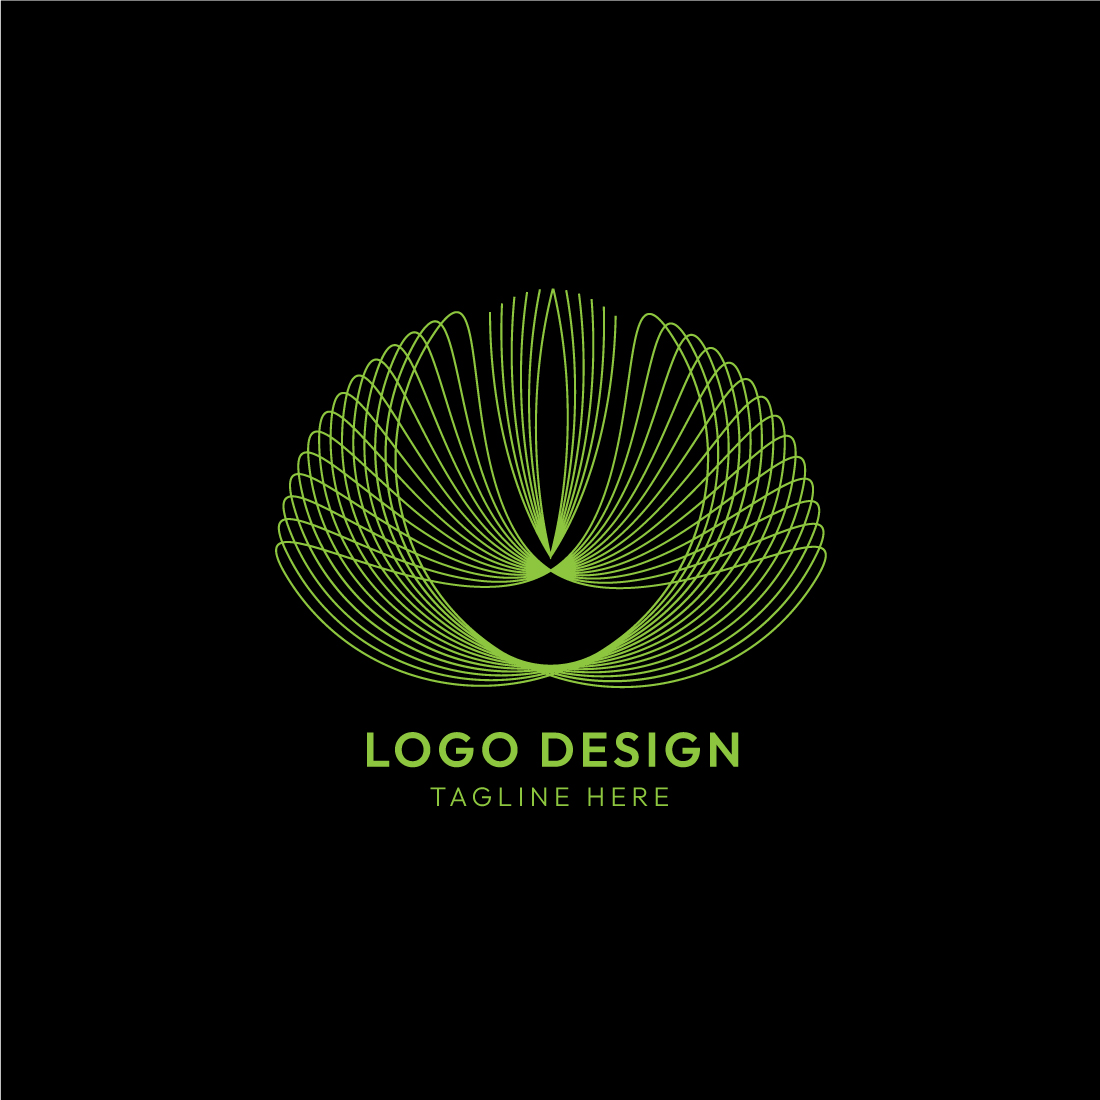 Line Art Nature & Beauty Logo Design Bundle preview image.